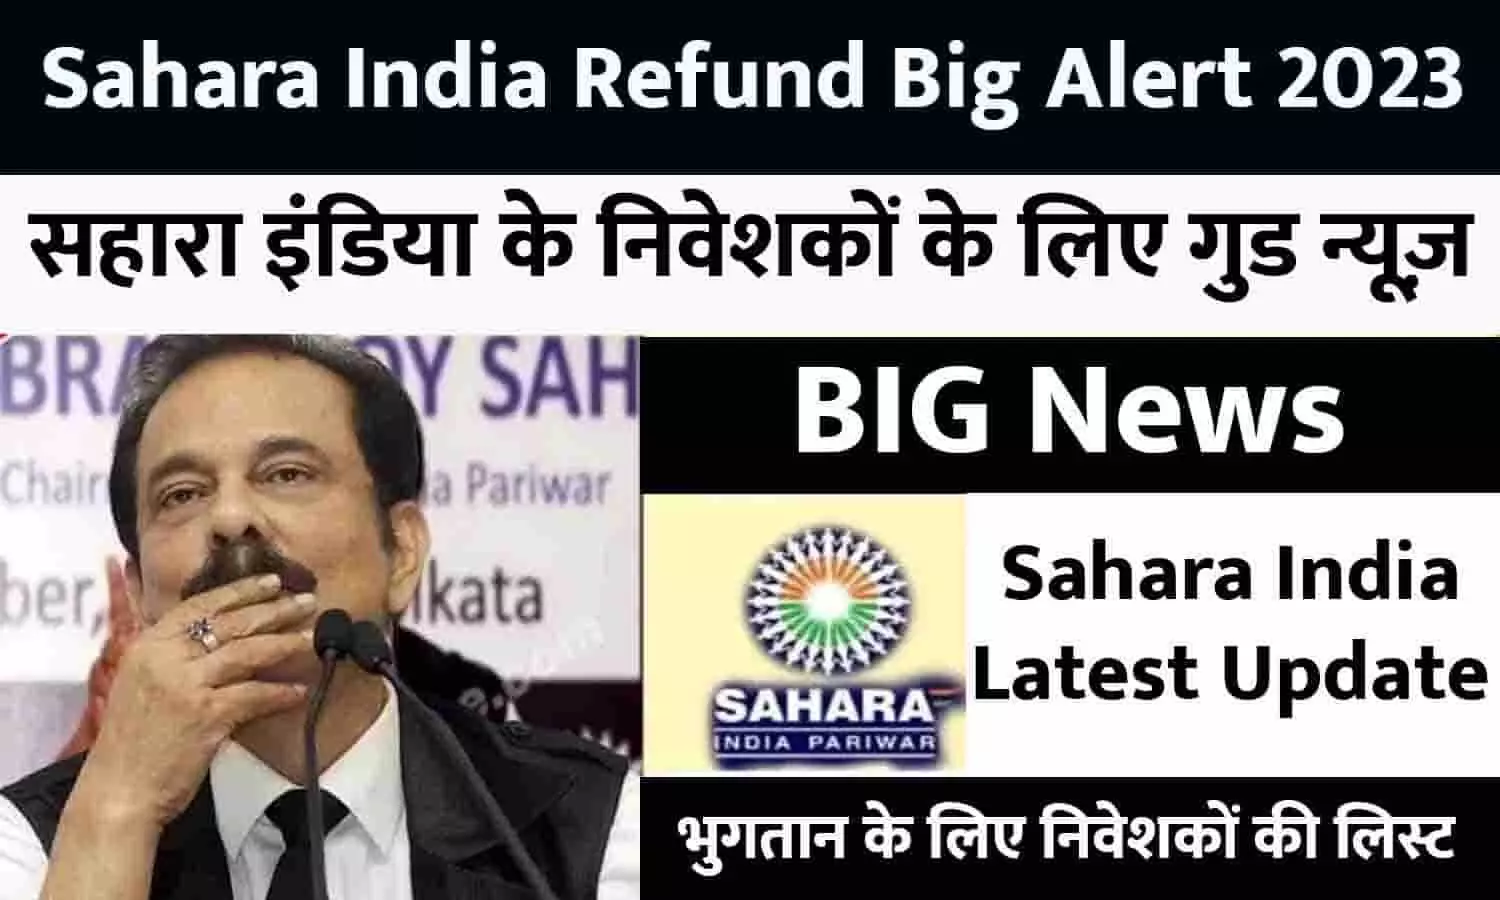 Sahara India Refund Big Alert 2023: सहारा इंडिया के निवेशकों के लिए गुड न्यूज़, भुगतान के लिए जारी हुई निवेशकों की लिस्ट, फटाफट ये दस्तावेज रखे तैयार